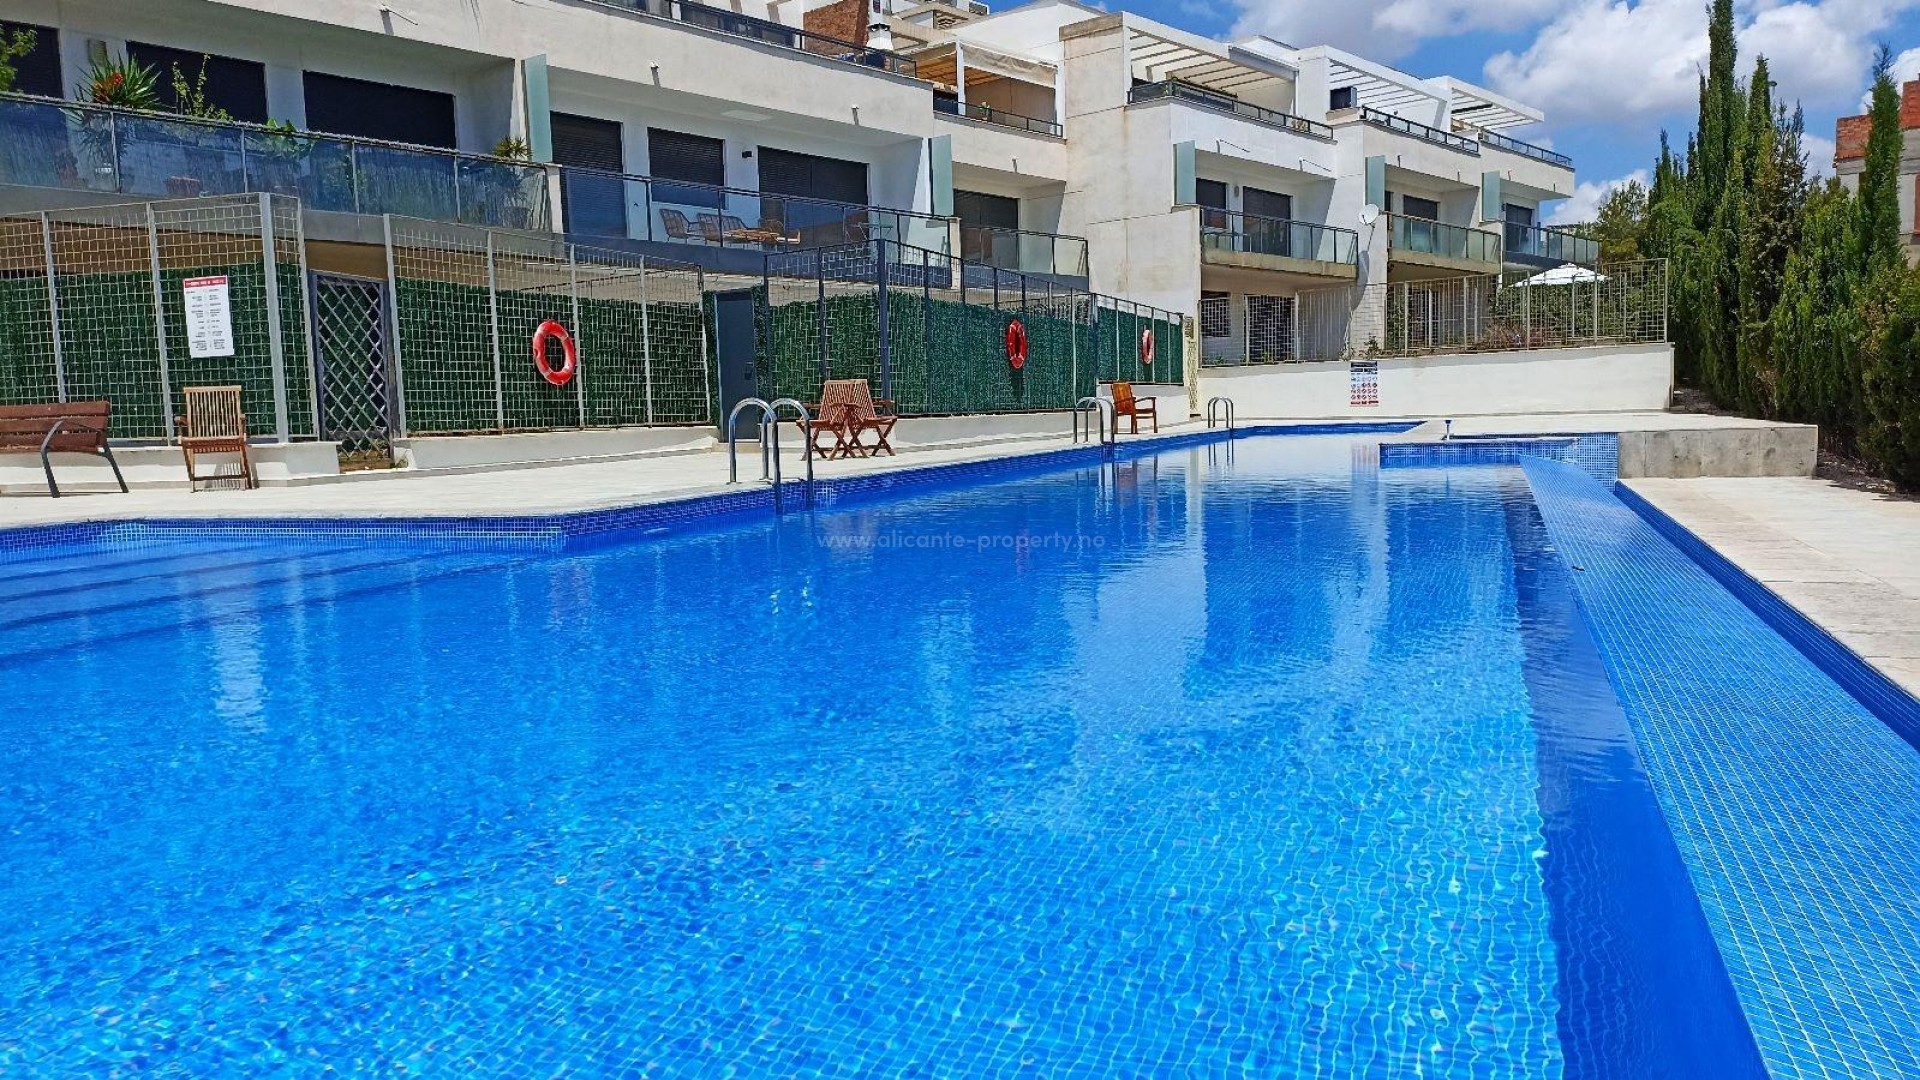 Nytt boligkompleks i Lomas de Campoamo, leiligheter med 2/3 soverom, 2 bad, balkong, noen med havutsikt, hage med svømmebasseng og treningsstudio